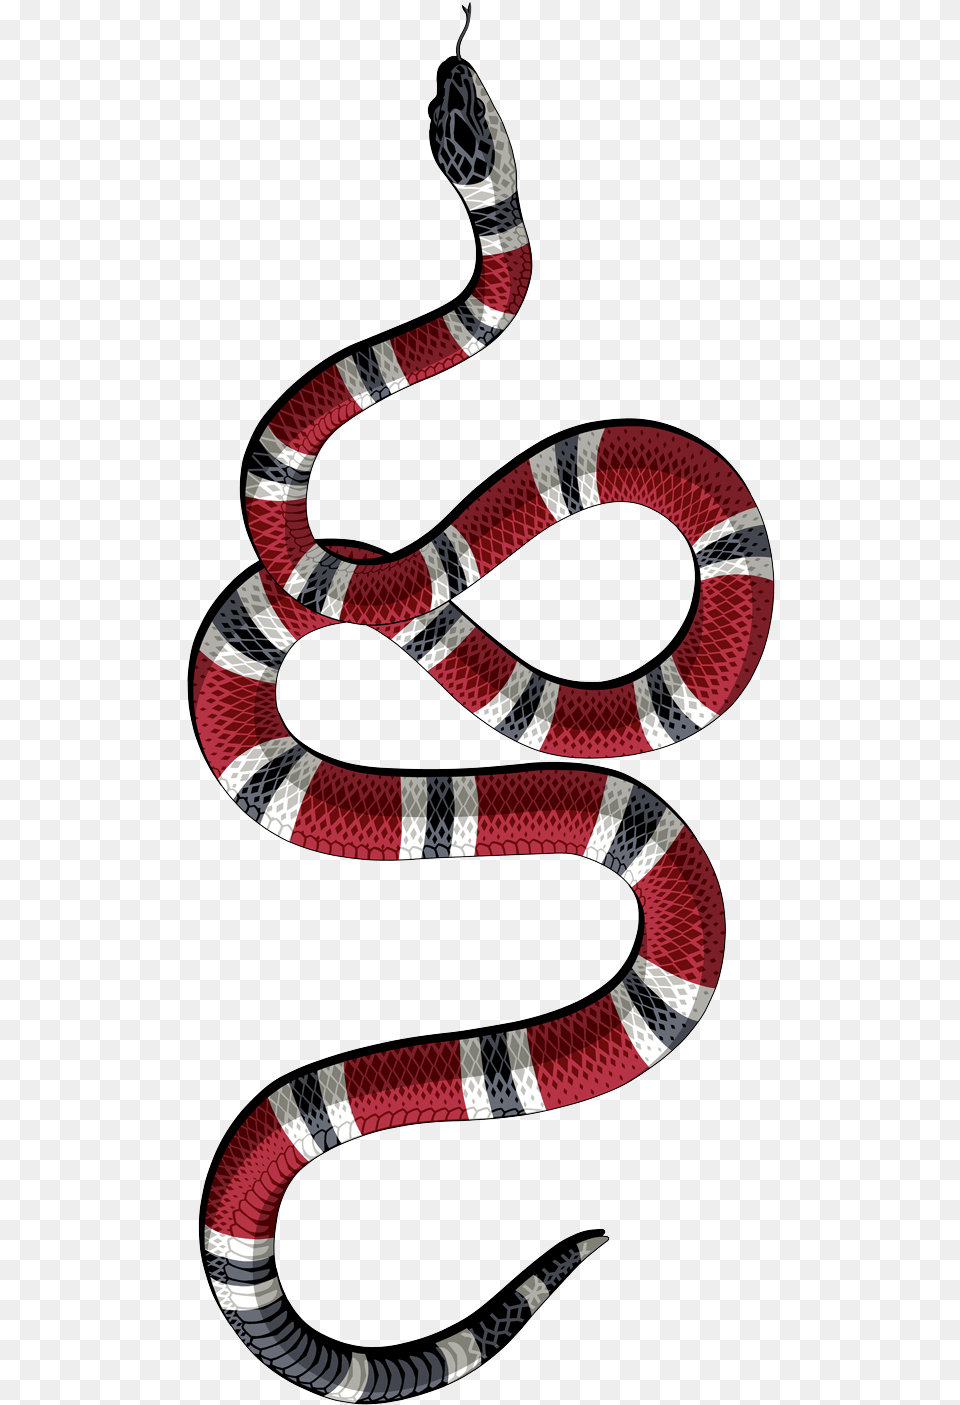 Gucci Snake Gucci Snake Logo, Animal, King Snake, Reptile Free Transparent Png